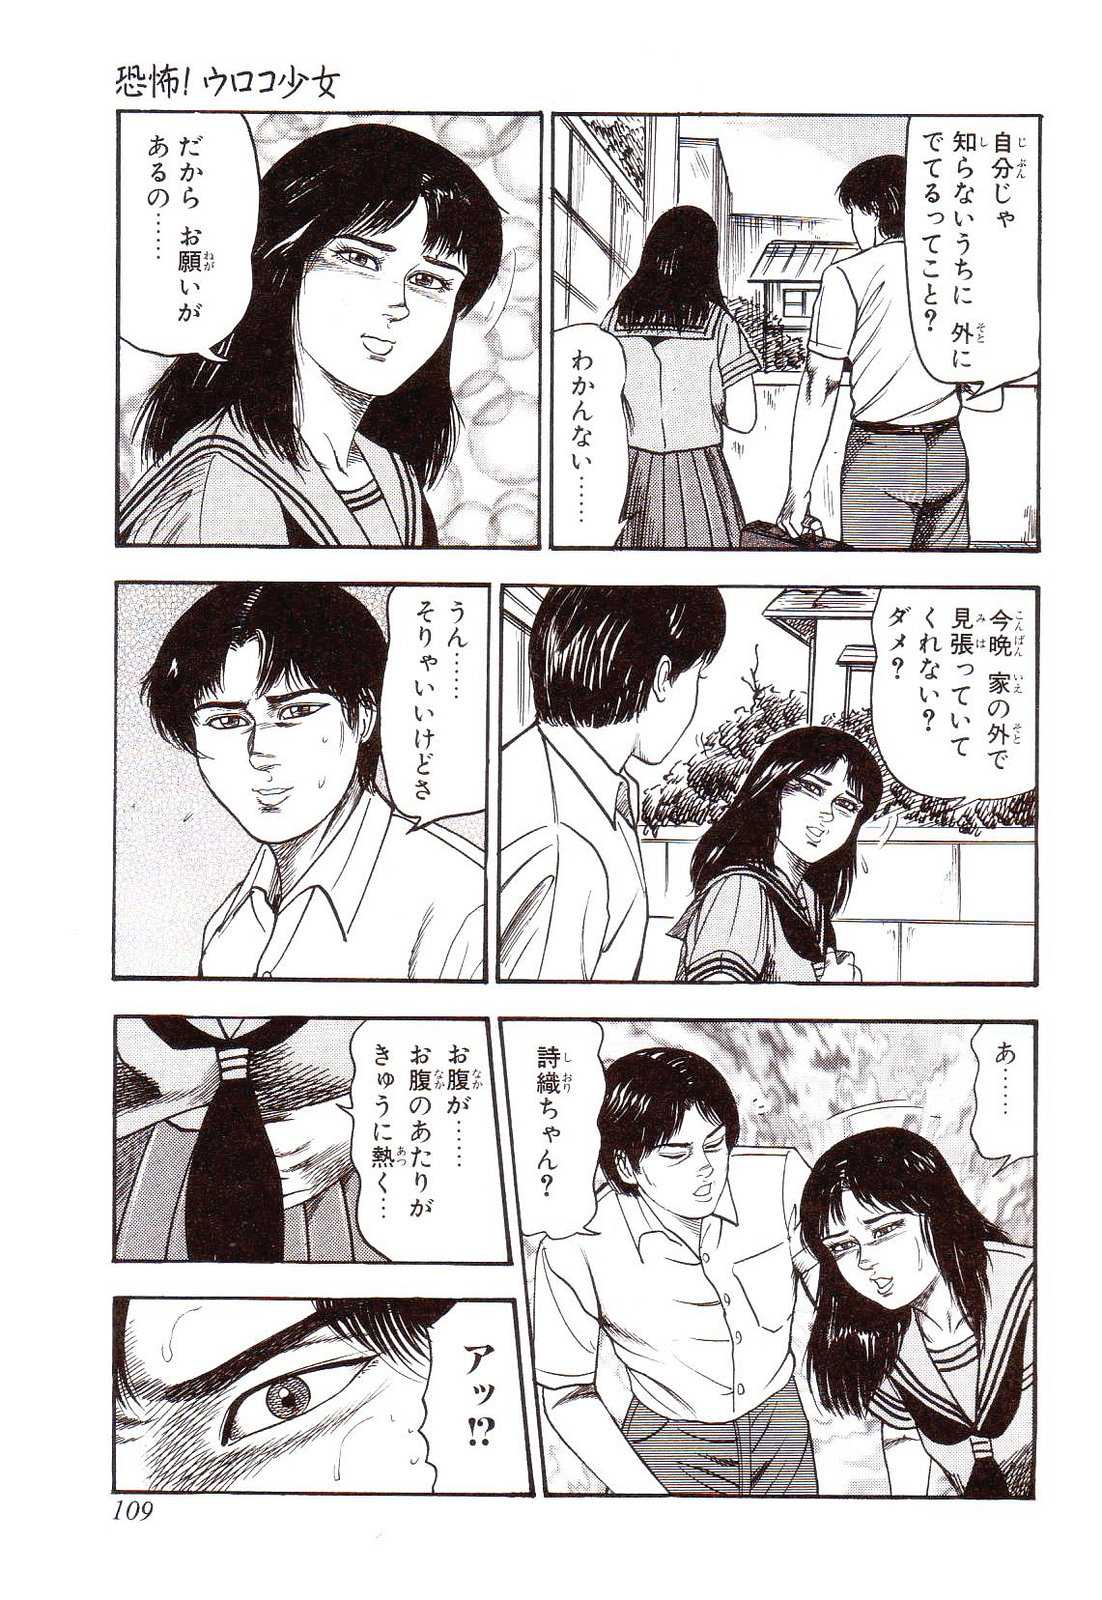 [Sanjou Tomomi] Inu ni Naritai -kyoufu manga shugyoku sakuhinshiyuu- [三条友美]  花嫁奴隷